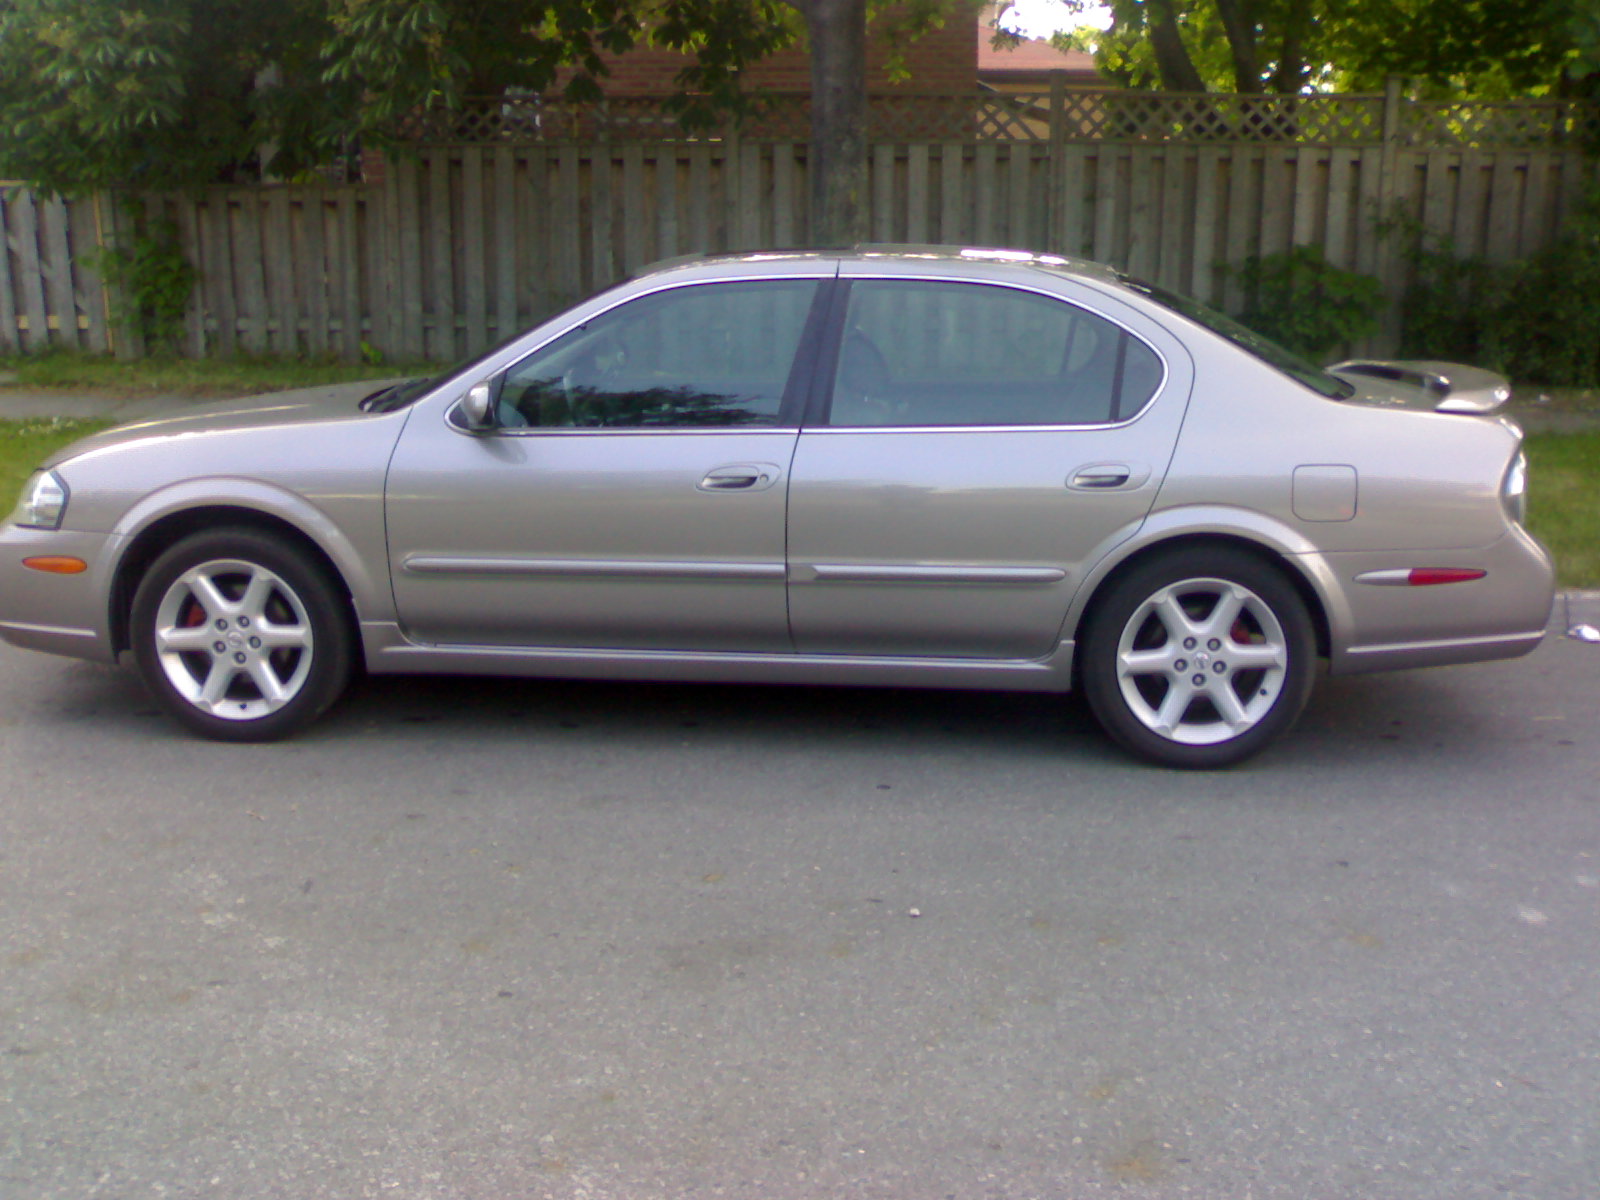 2002 Nissan maxima exterior colors #1